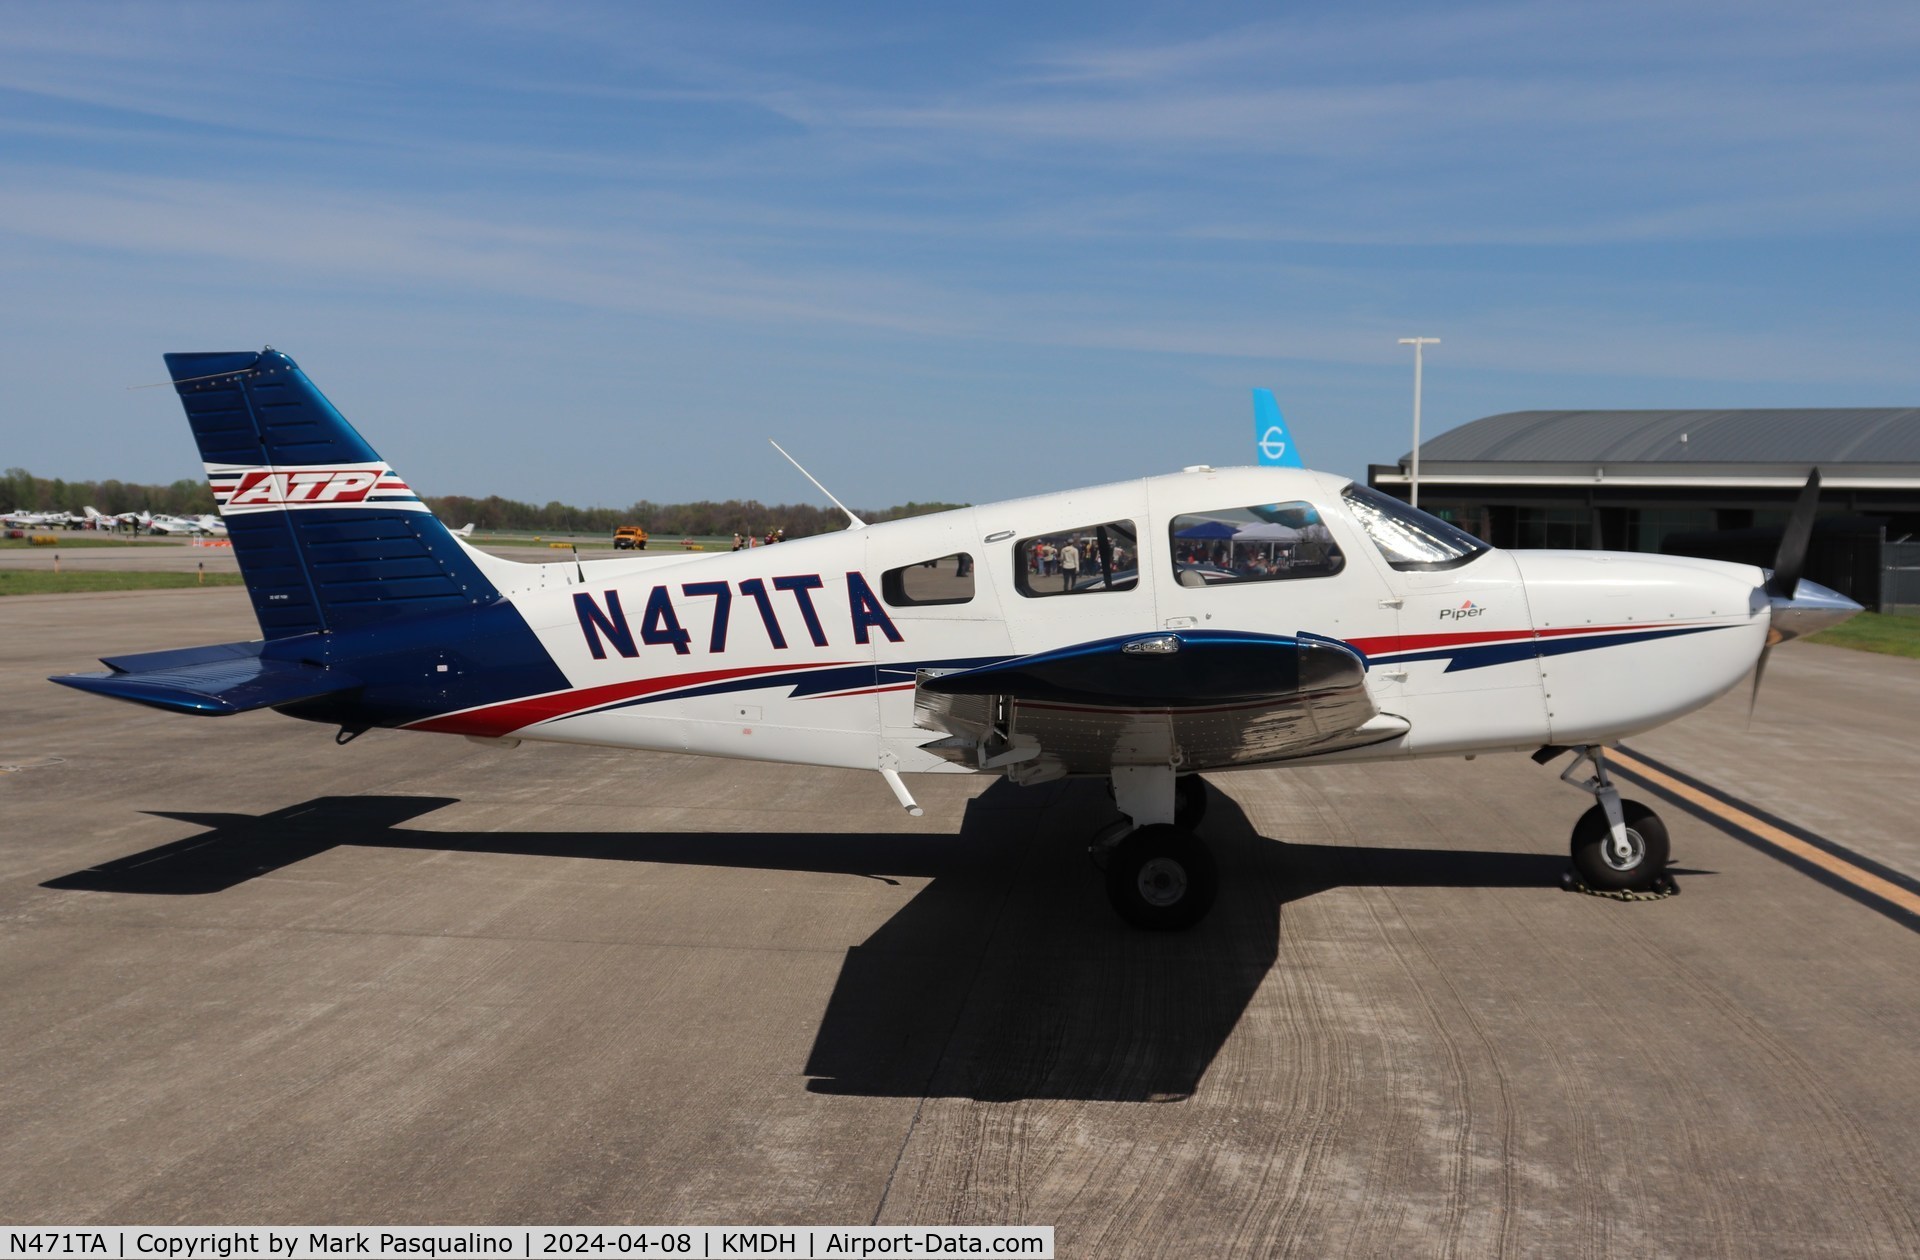 N471TA, 2020 Piper PA-28-181 C/N 2881313, Piper PA-28-181